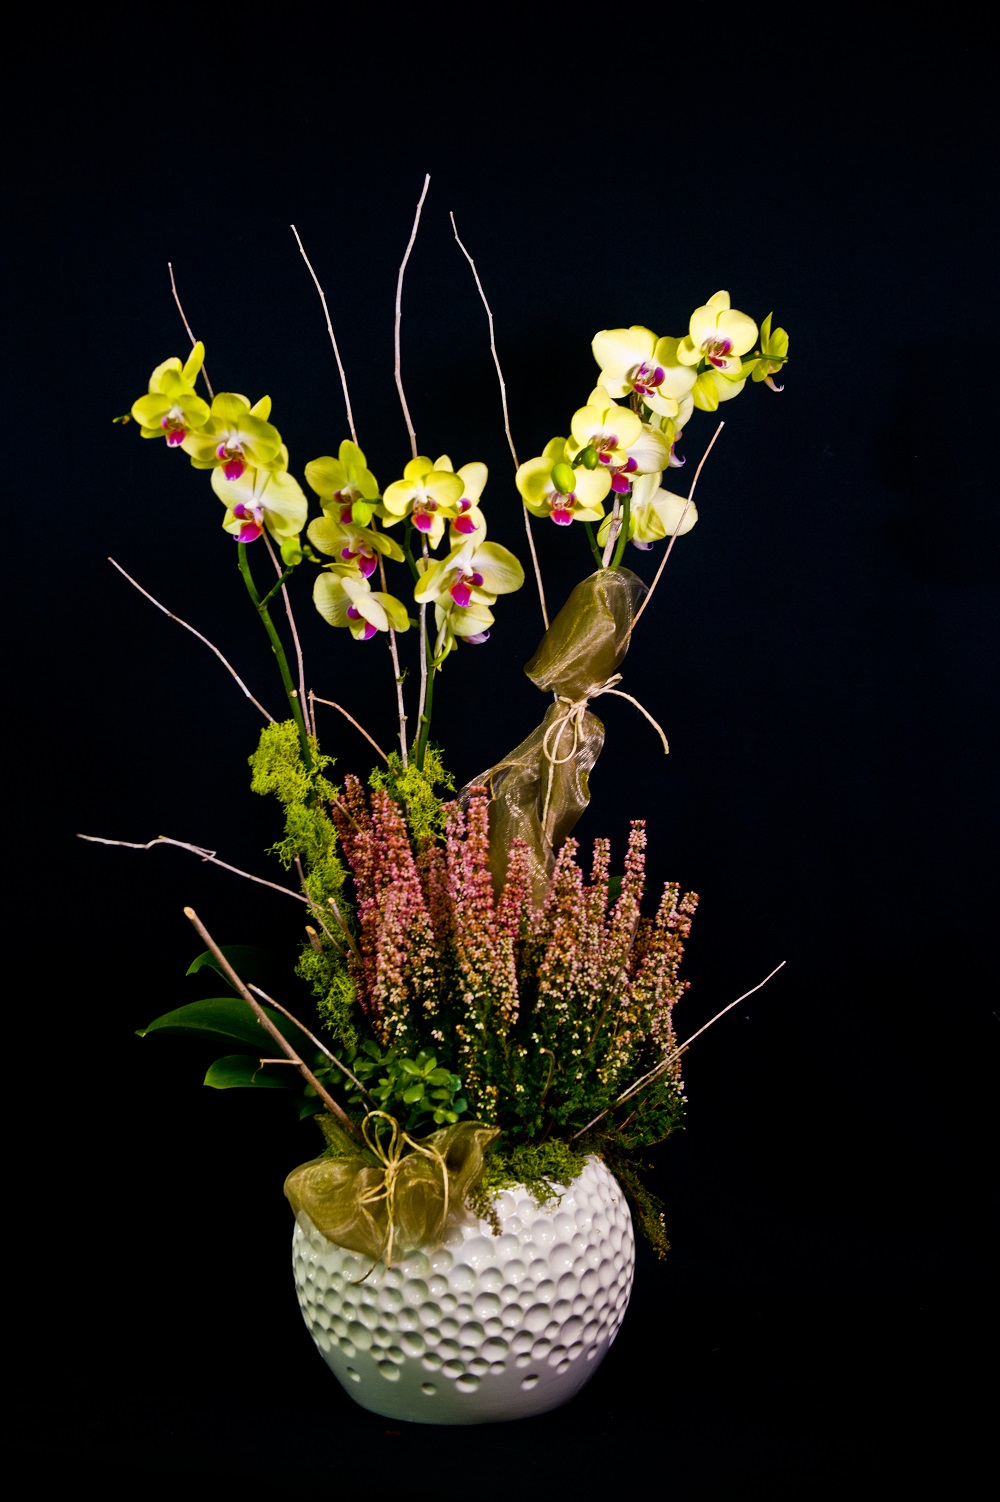 Orchidea phalaenopsis con vaso di ceramica in composizione - La Violetta,  fiorai da due generazioni